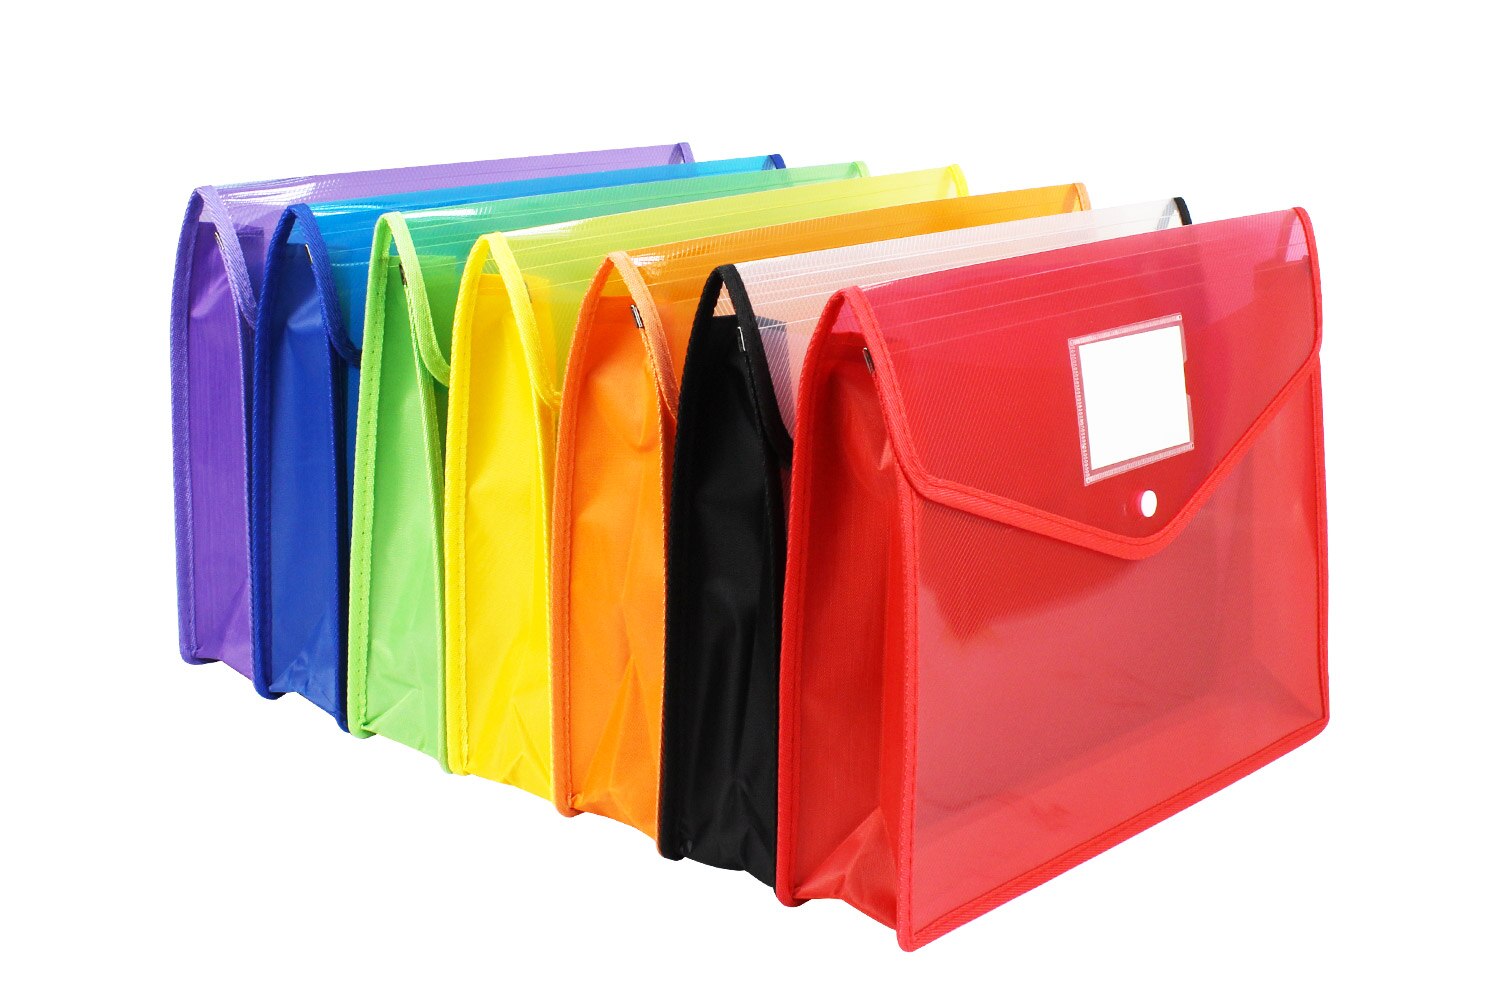 7 색 A4 플라스틱 지갑 폴더 봉투, 클로저 및 라벨 포켓, 파일 오거나이저, 폴더 문서 파일 홀더 가방